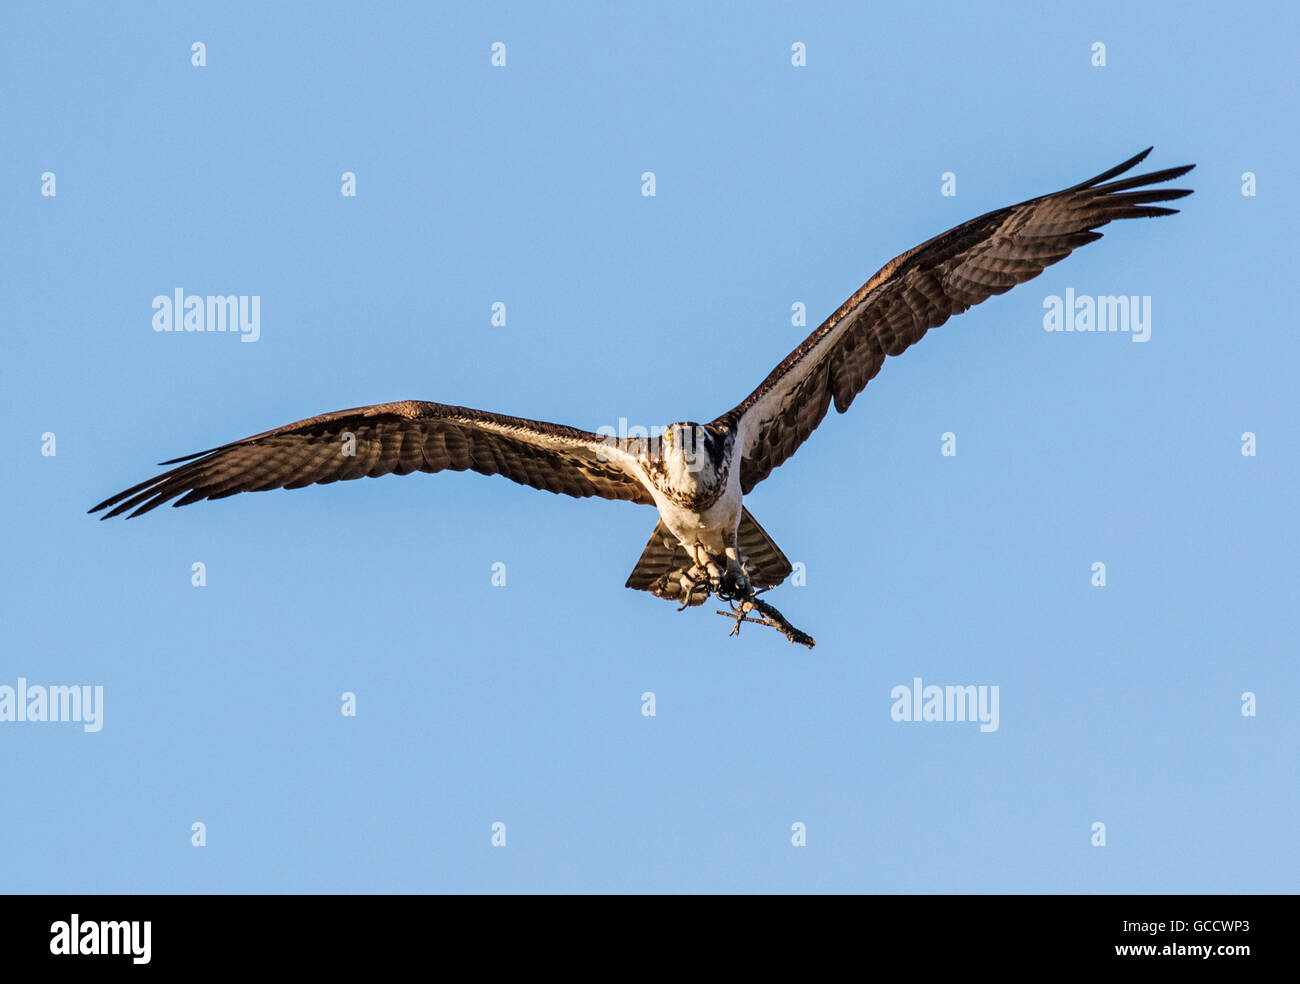 Osprey en vuelo, portando palos para anidar, Pandion haliaetus, mar, peces halcón, Río Eagle Hawk, peces halcón, raptor Foto de stock